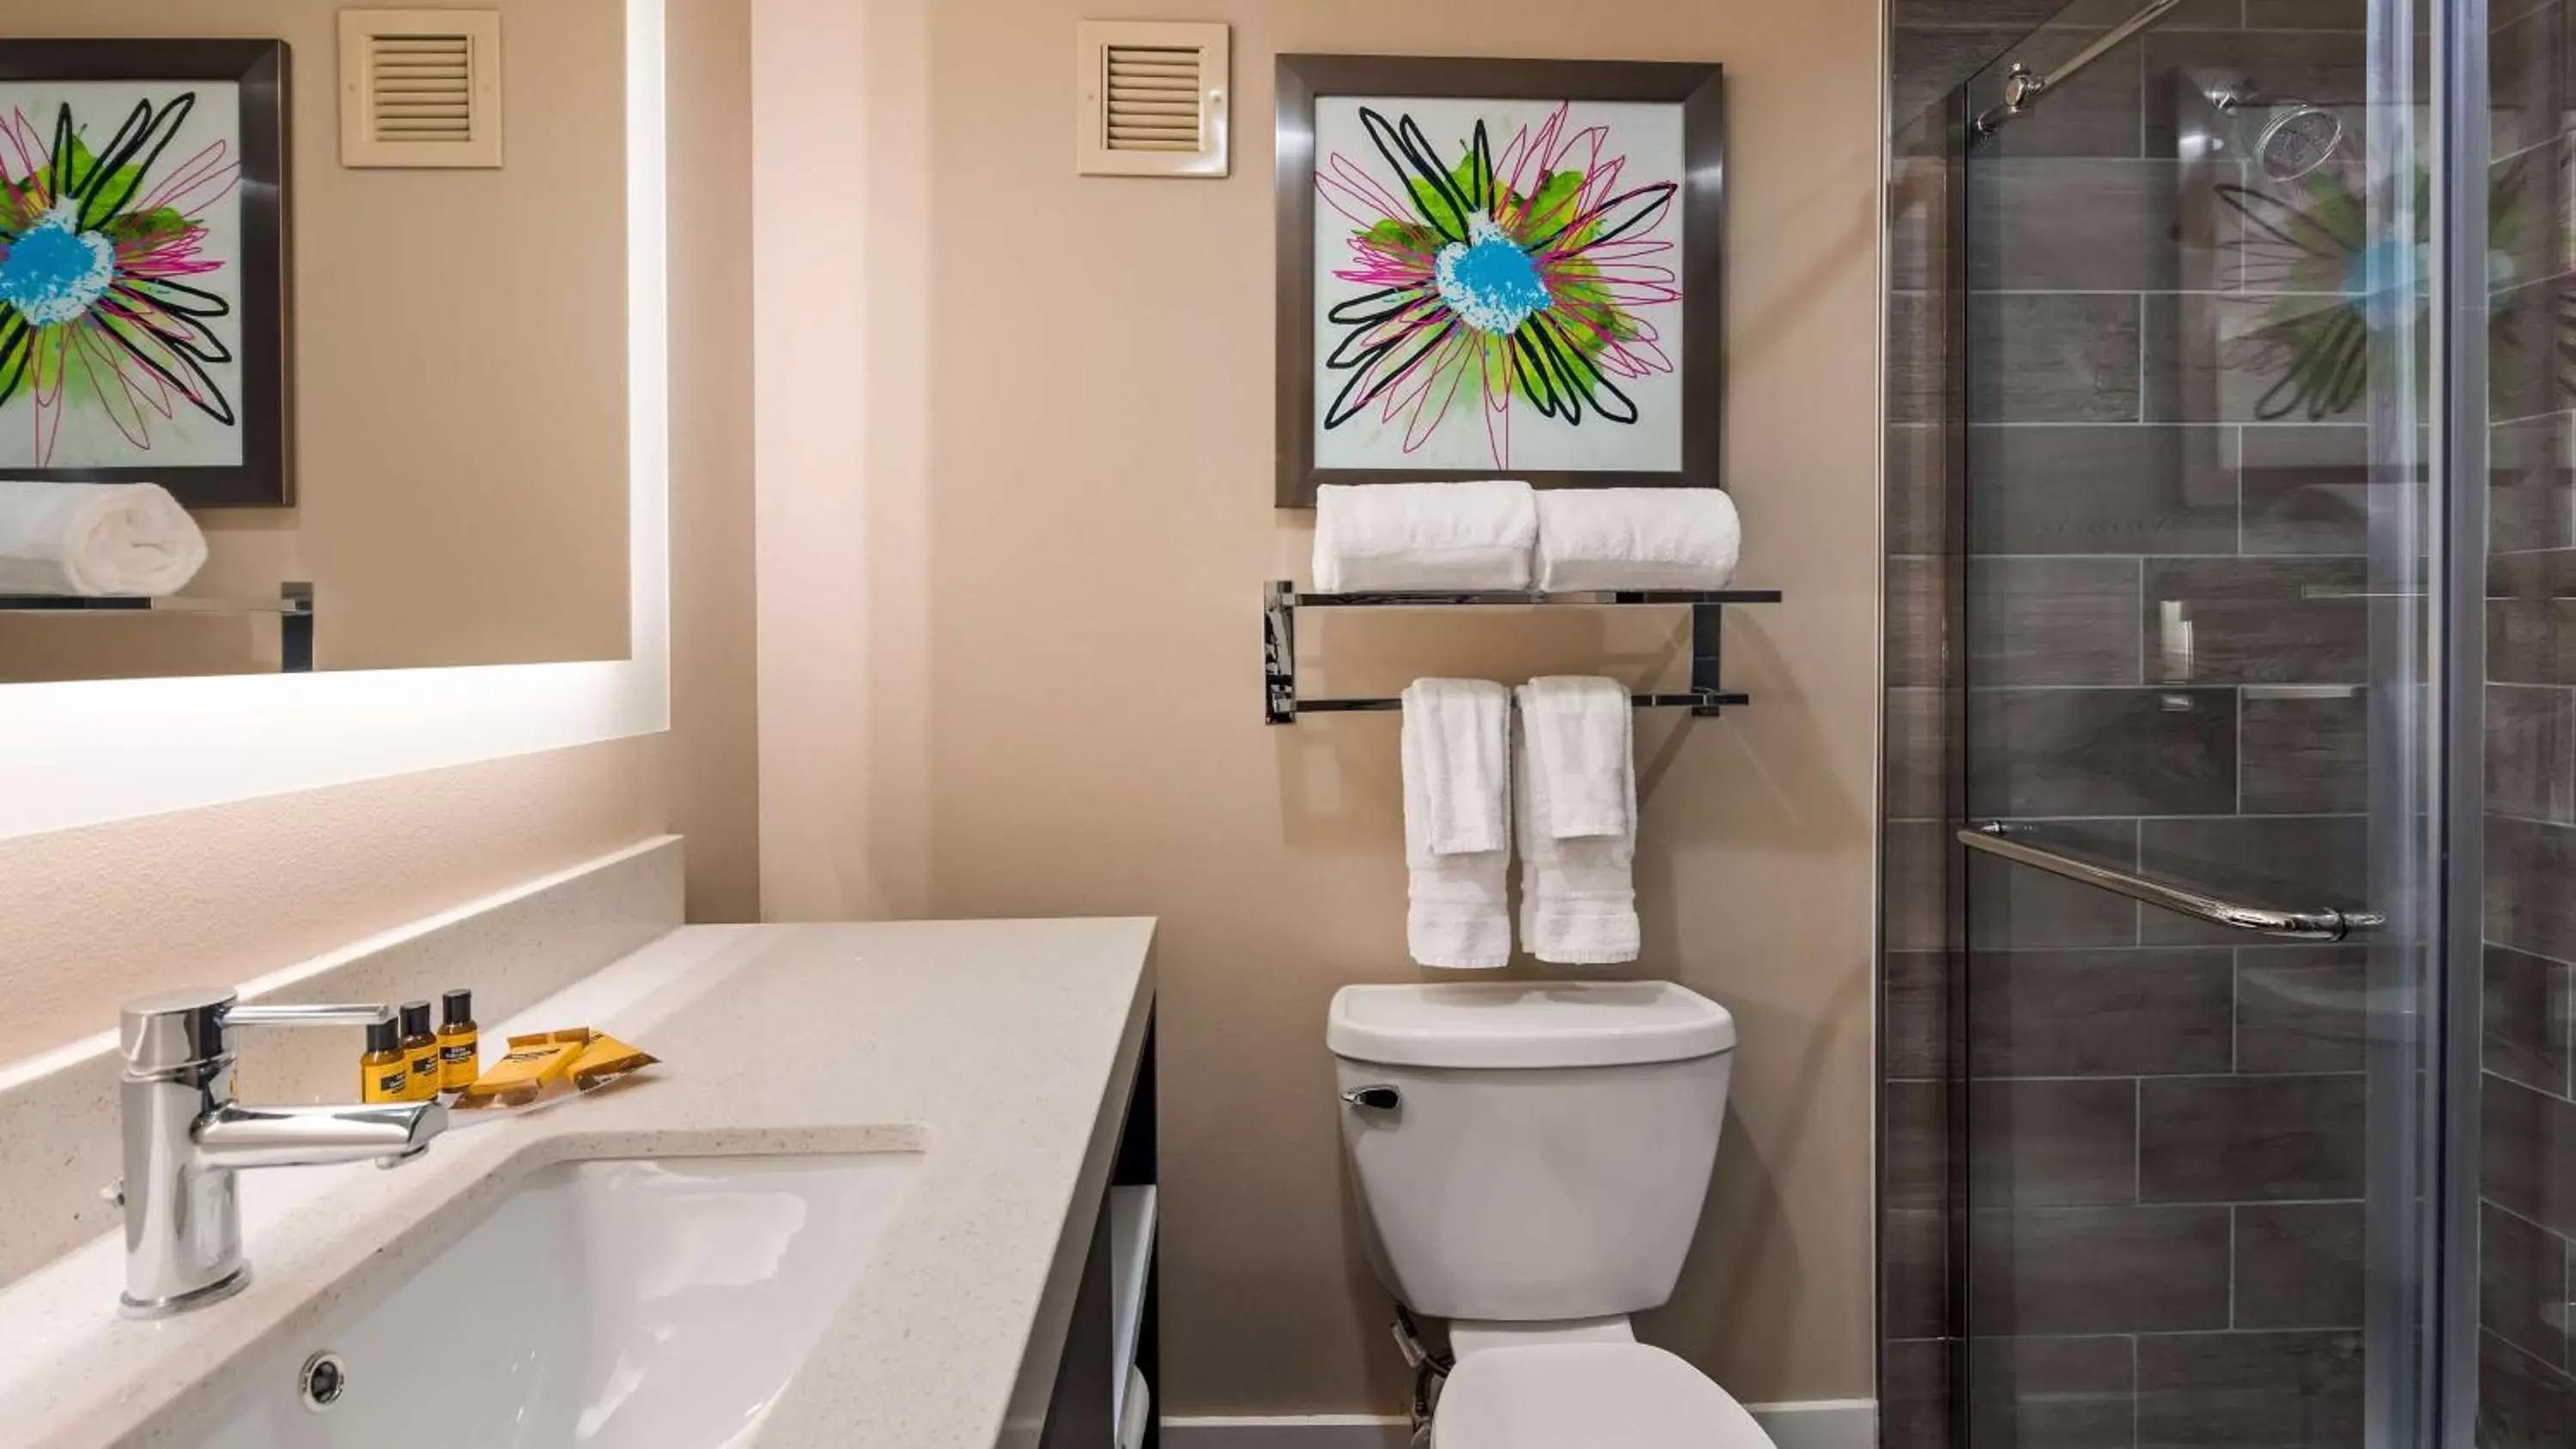 Bathroom in Best Western Plus Greenville I-385 Inn & Suites